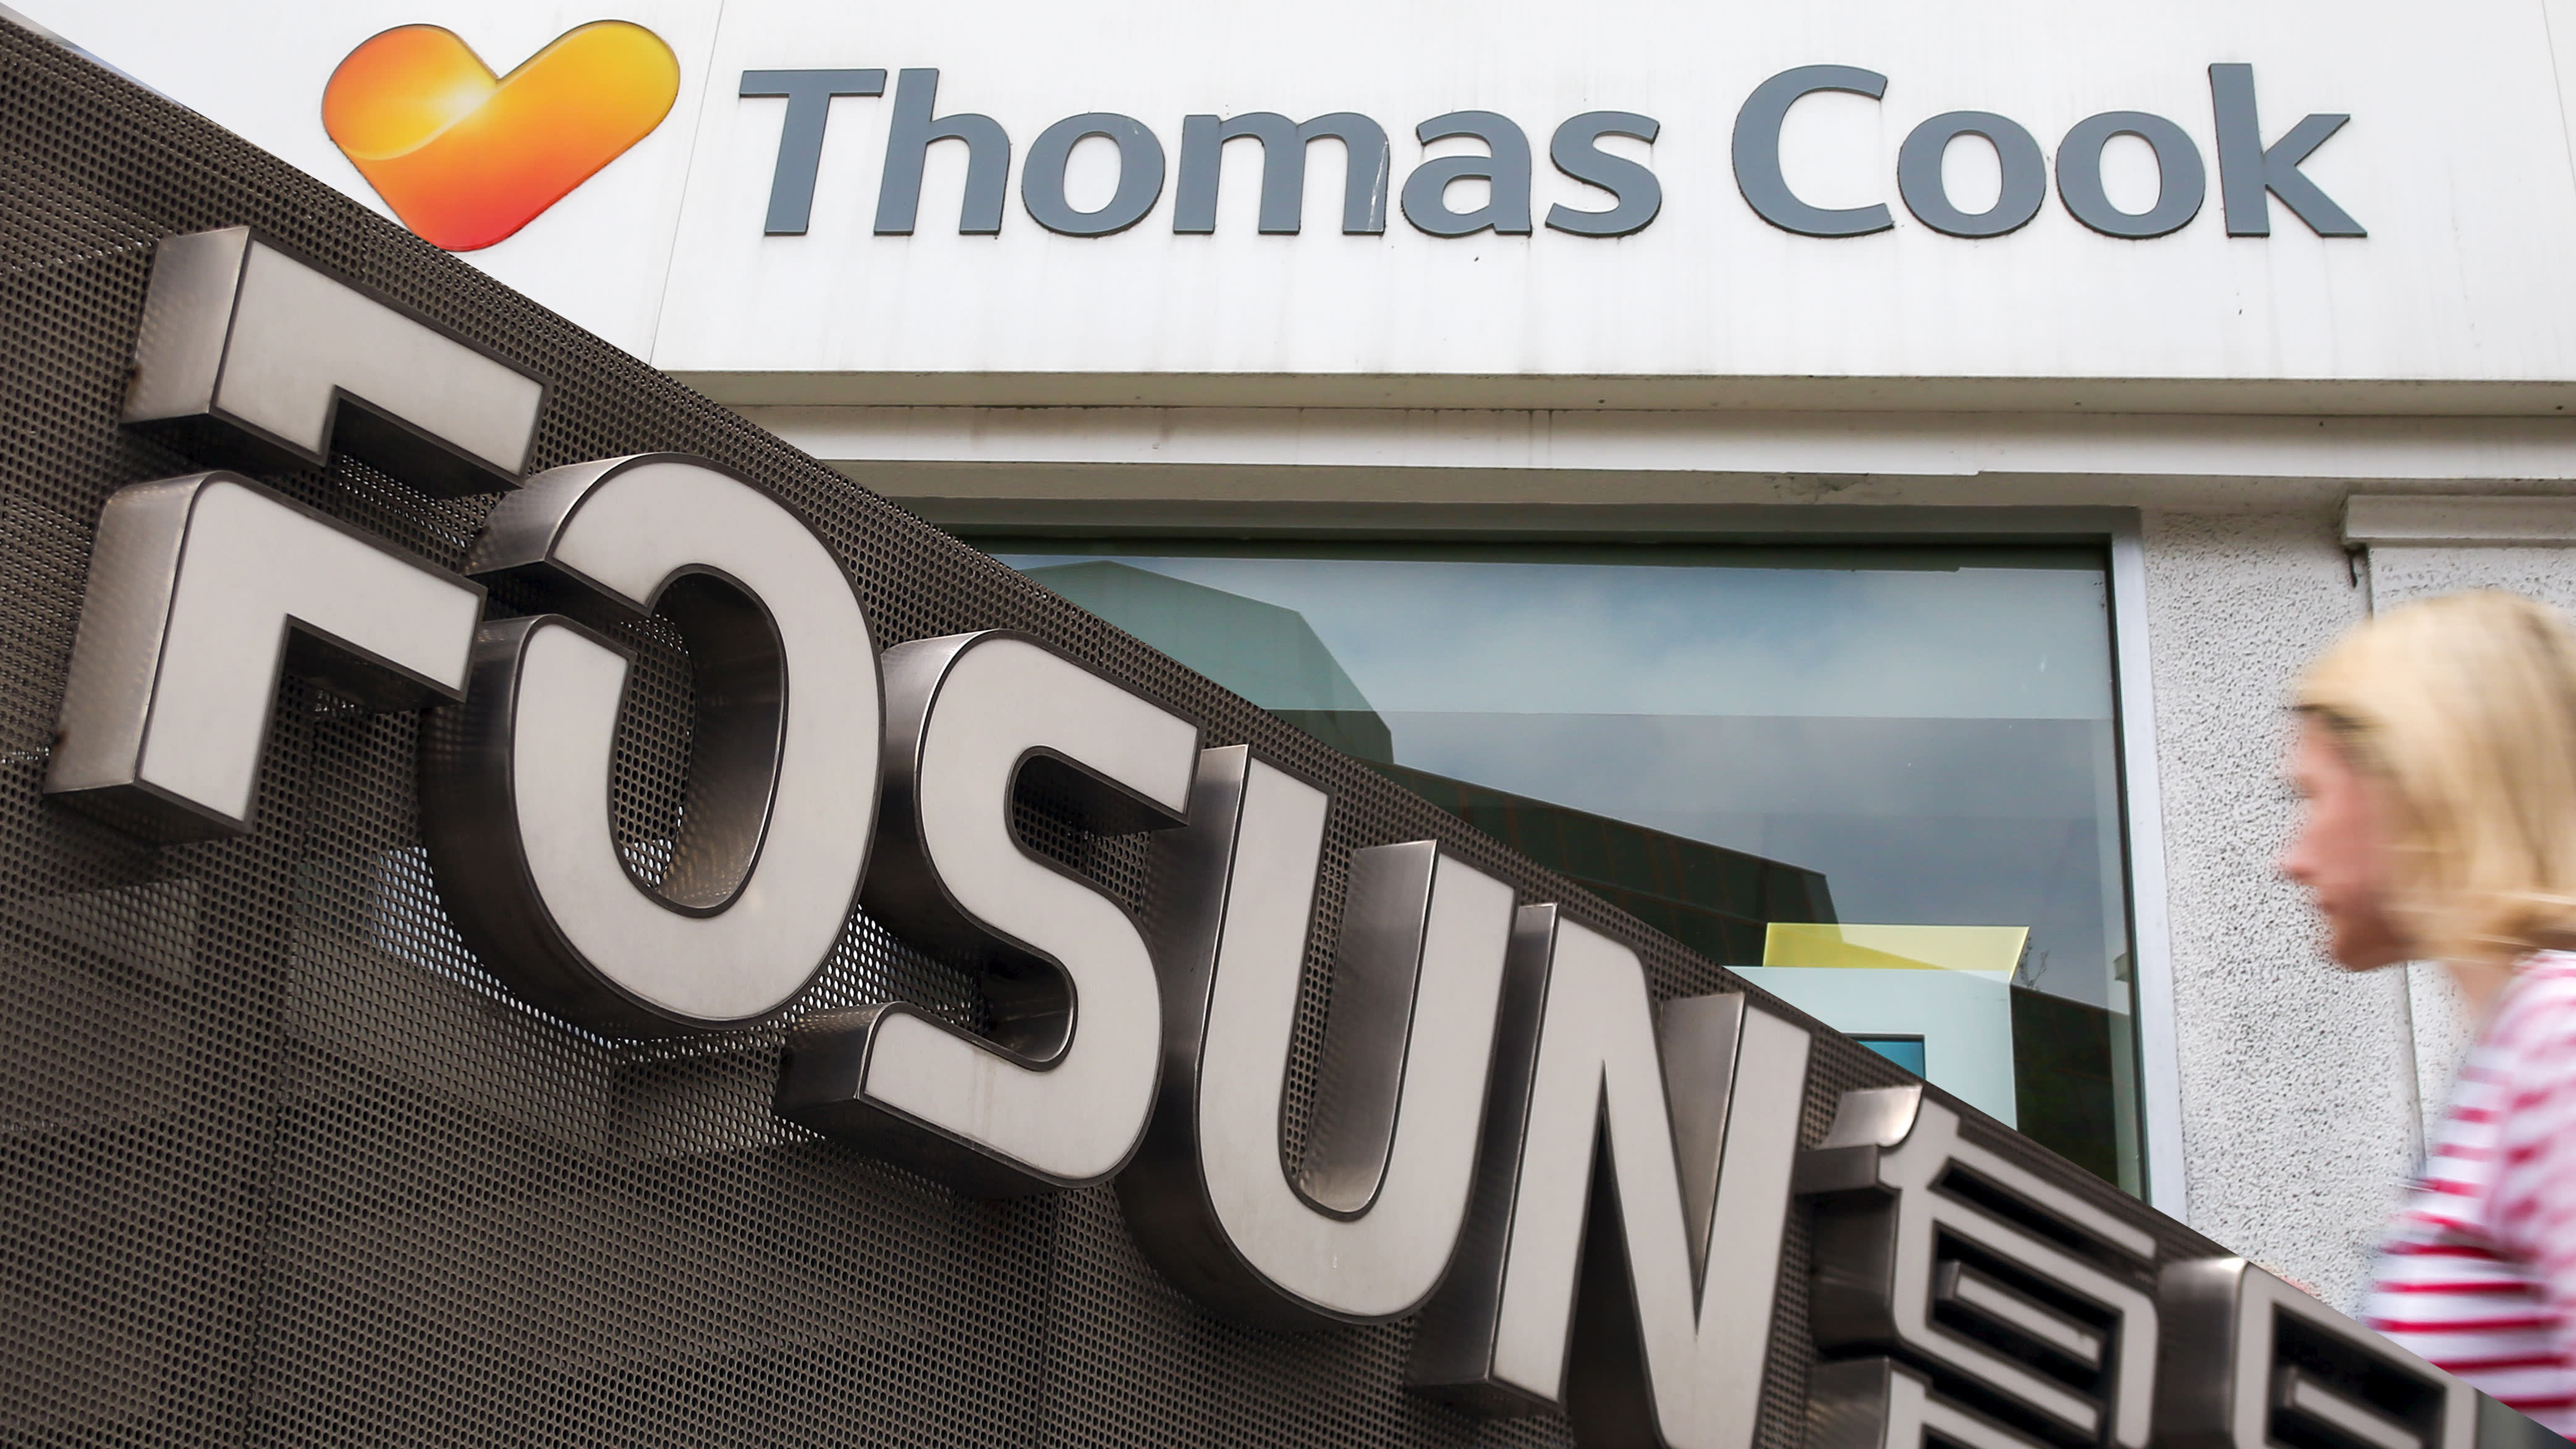 Fosun buys Thomas Cook brand for 11 mn pounds